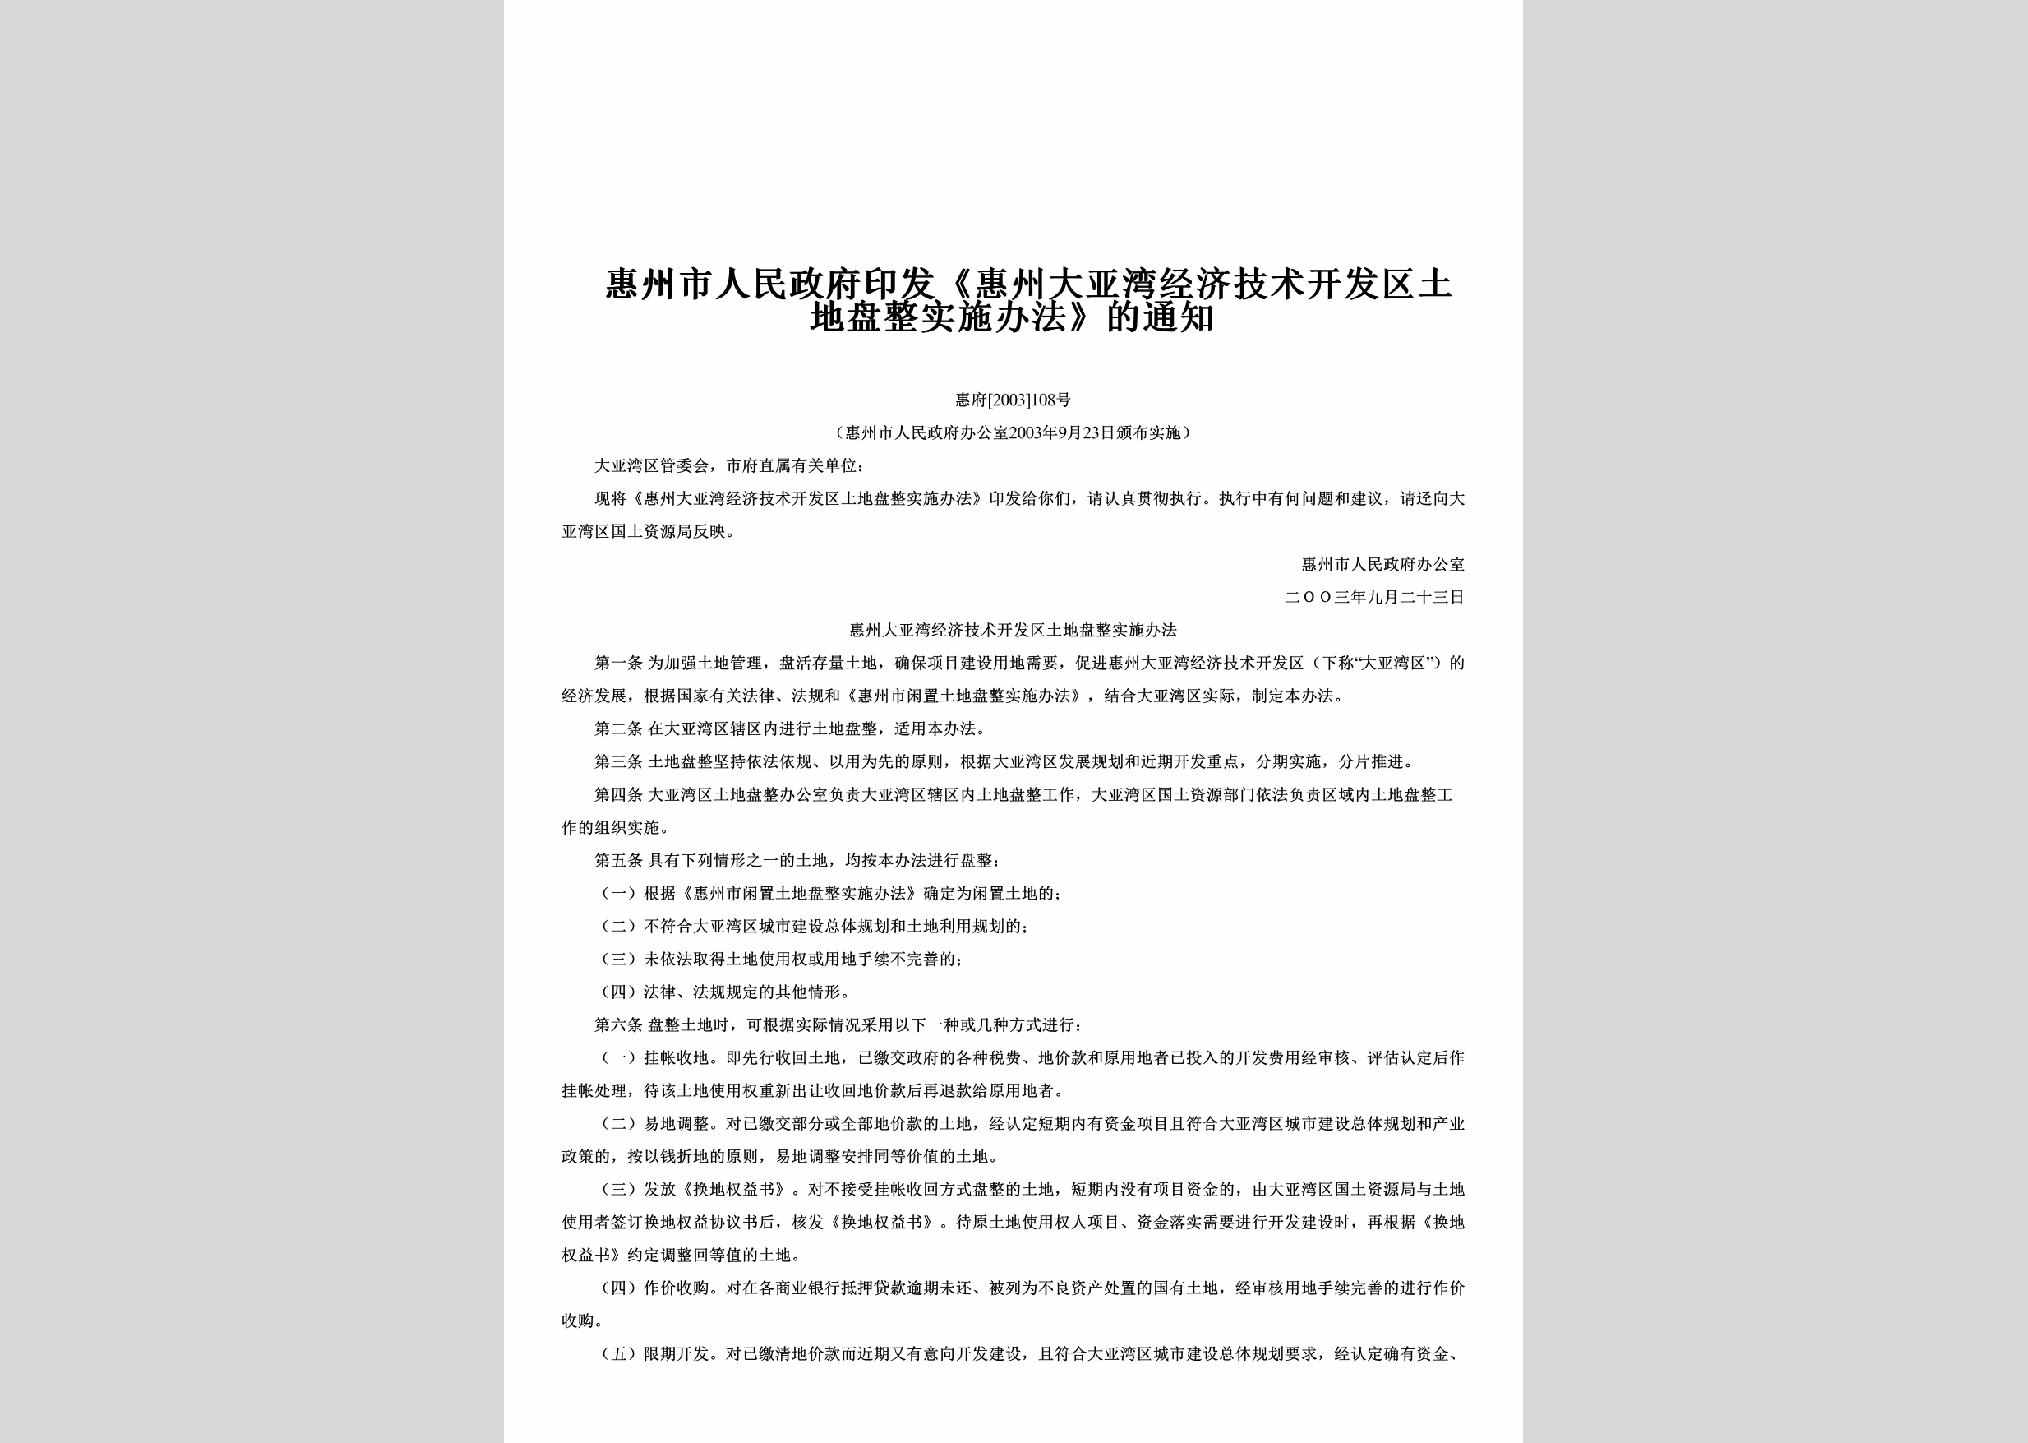 惠府[2003]108号：印发《惠州大亚湾经济技术开发区土地盘整实施办法》的通知